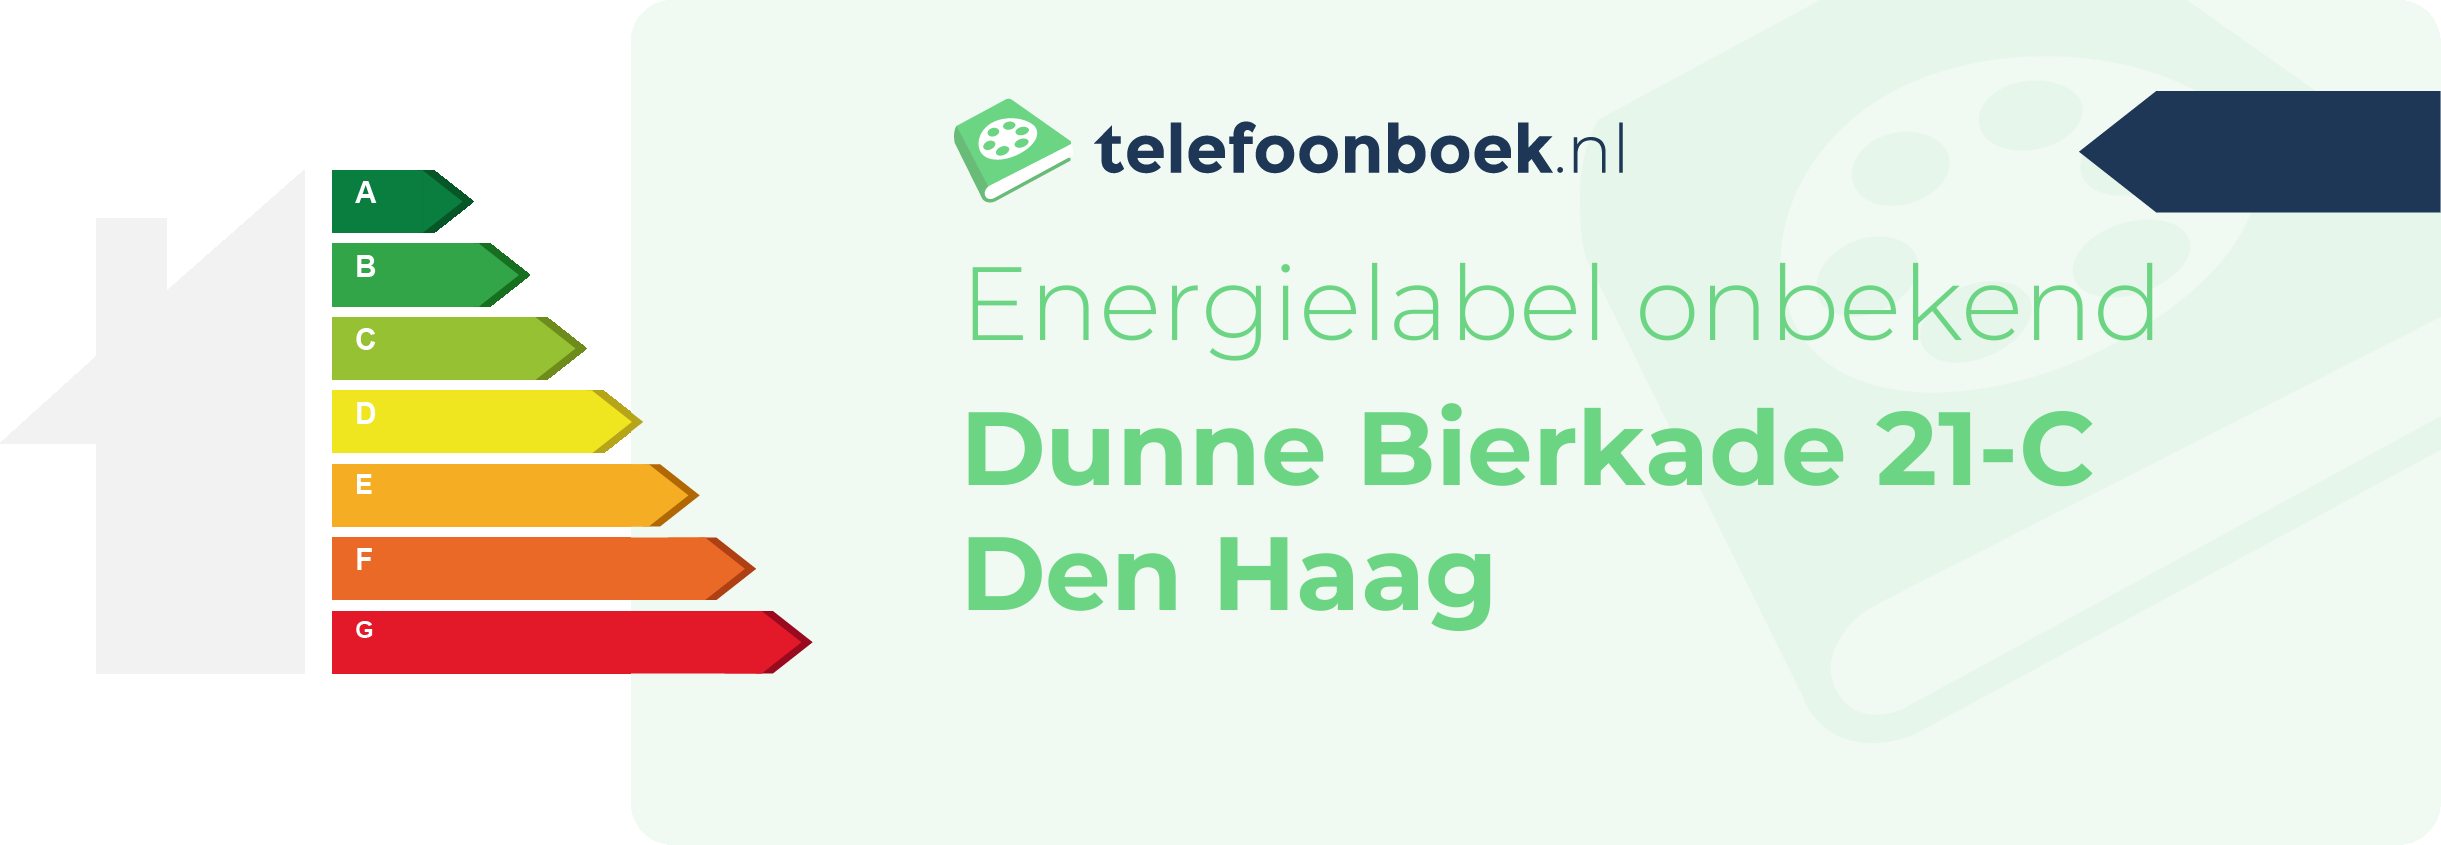 Energielabel Dunne Bierkade 21-C Den Haag